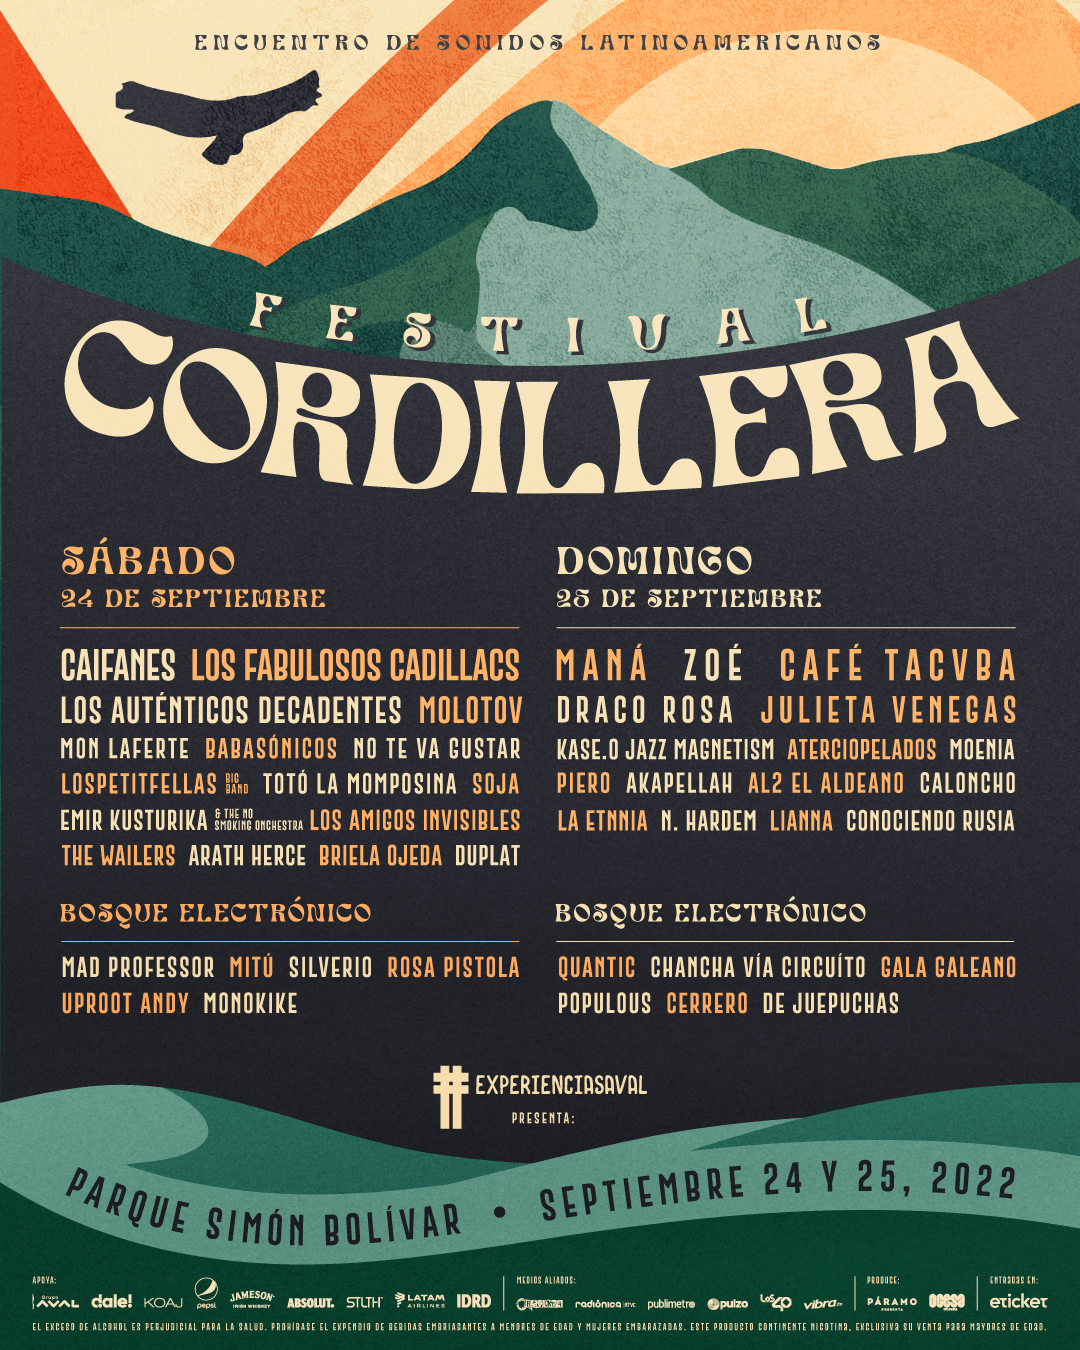 image 19 - Caifanes, Los Fabulosos Cadillacs, Zoé y Café Tacvba encabezan los dos días del Festival Cordillera